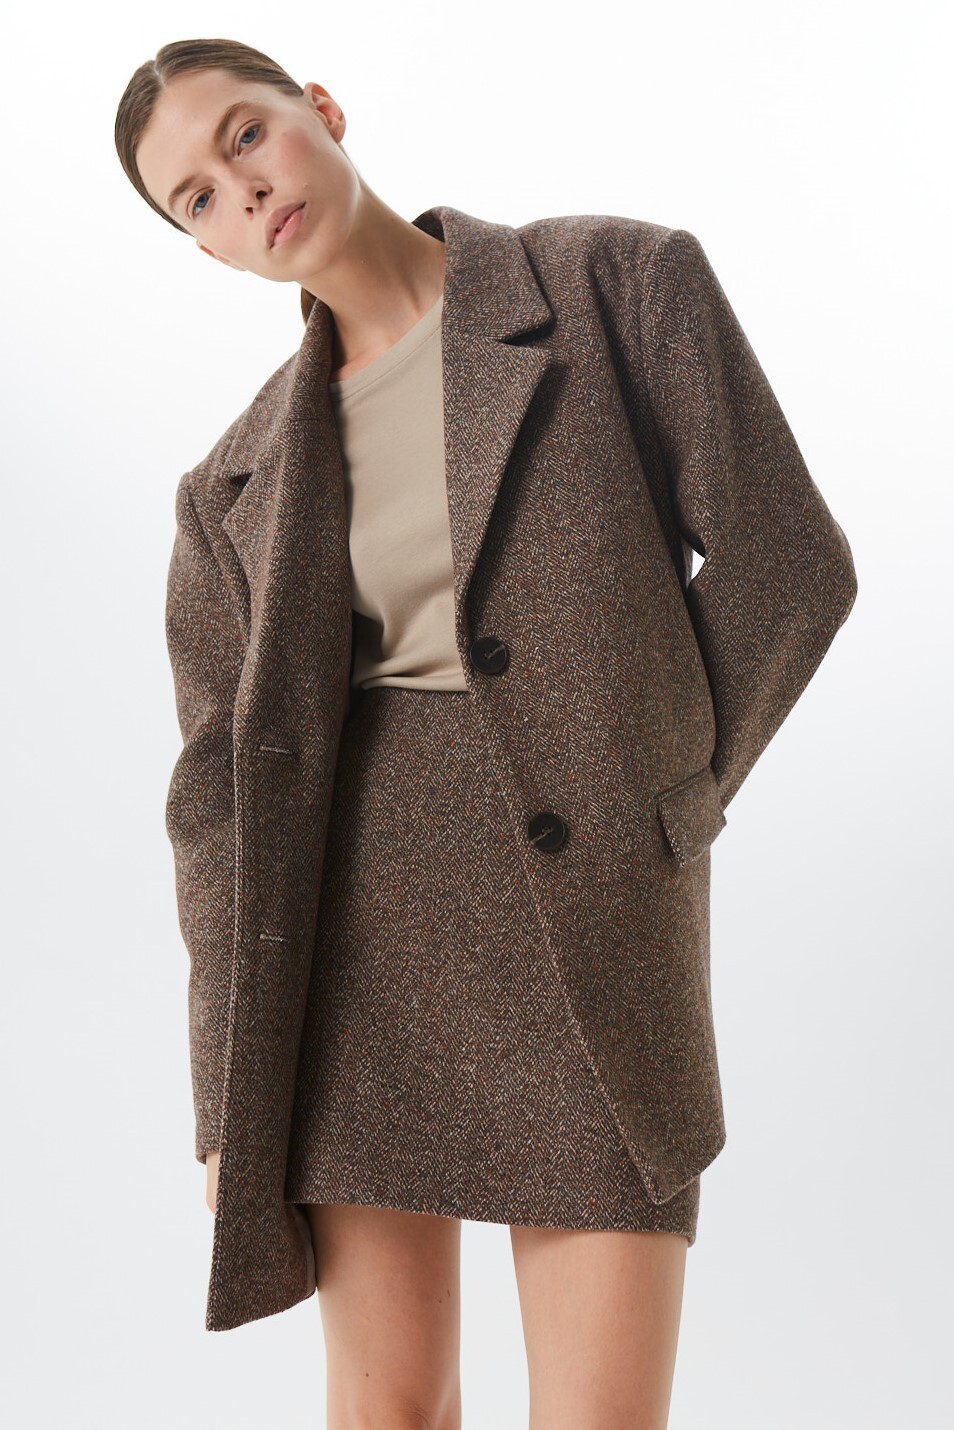 Пальто-пиджак женское, шерсть, коричневая елочка меланж